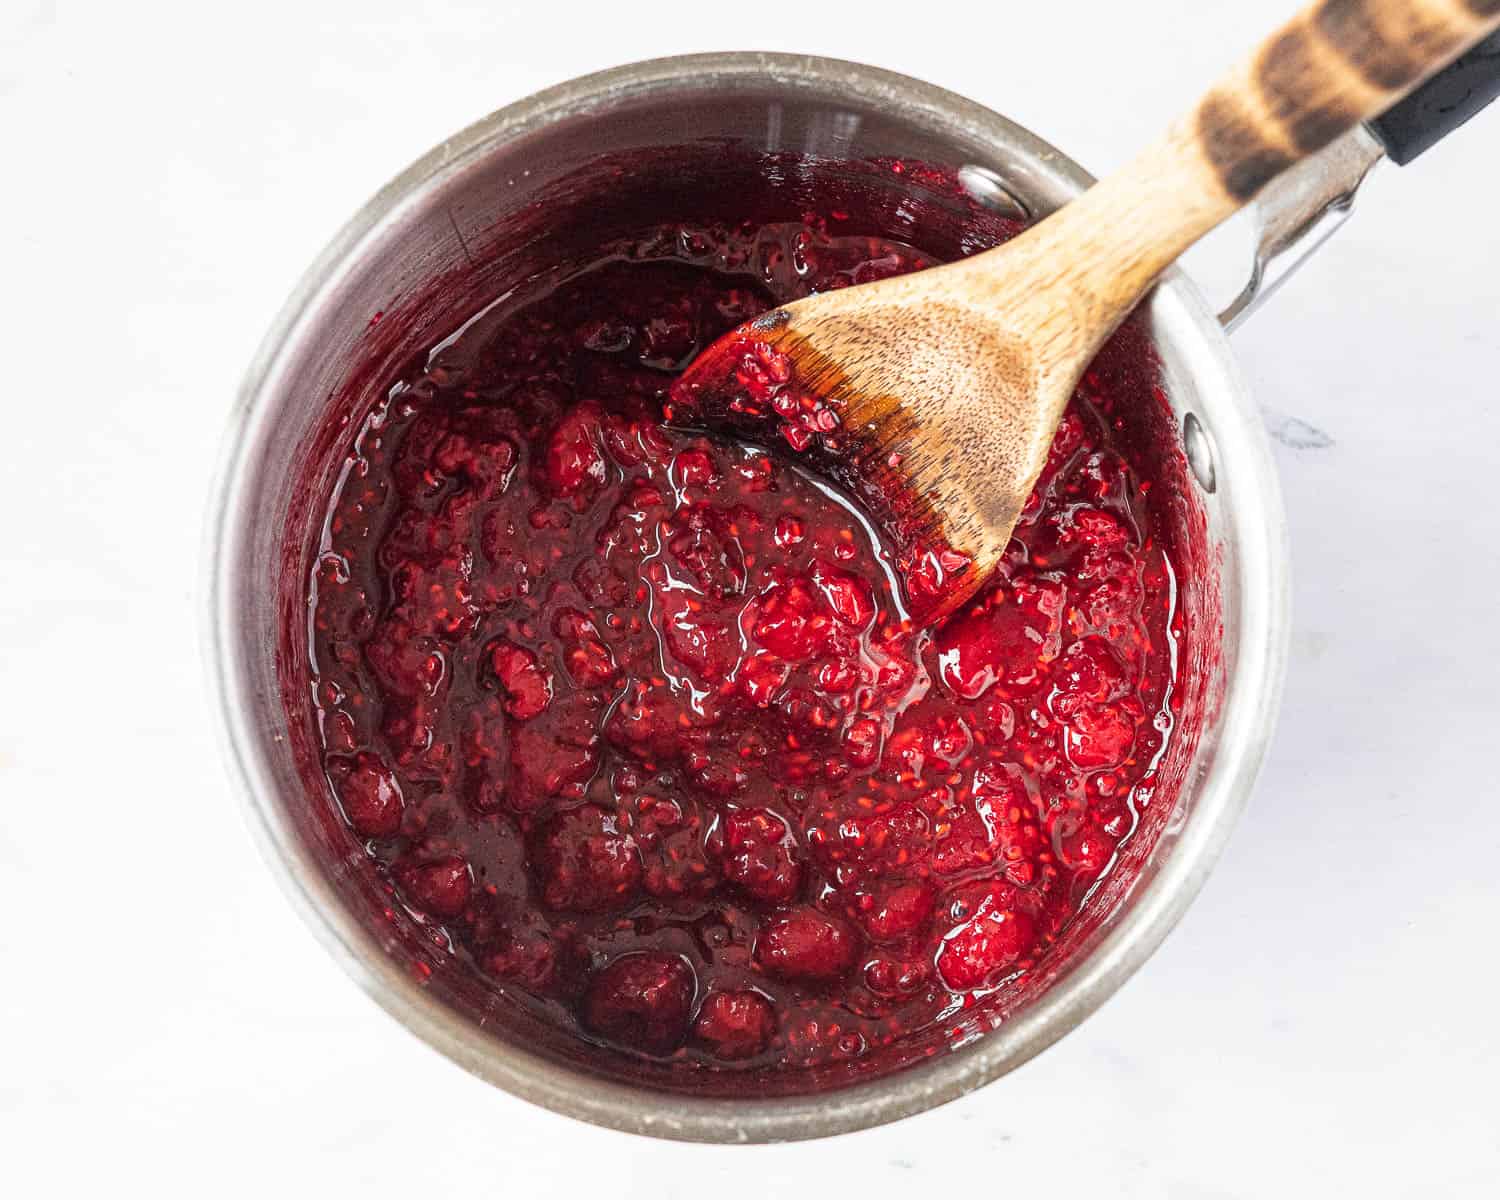 The raspberry swirl in a pan.